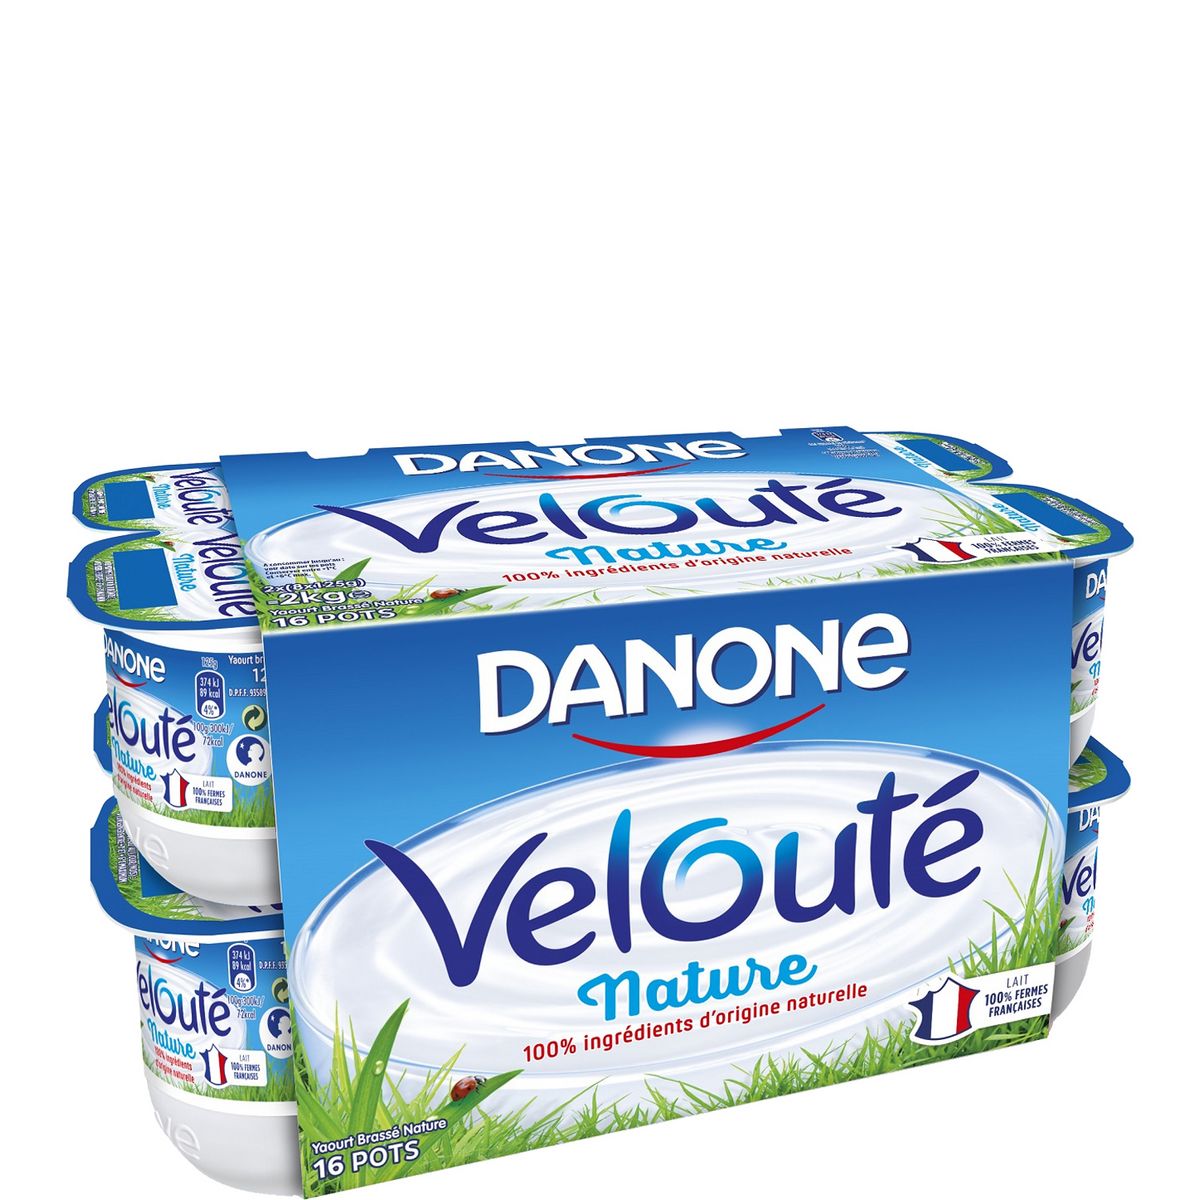 DANONE Velouté yaourt pas cher à prix Auchan